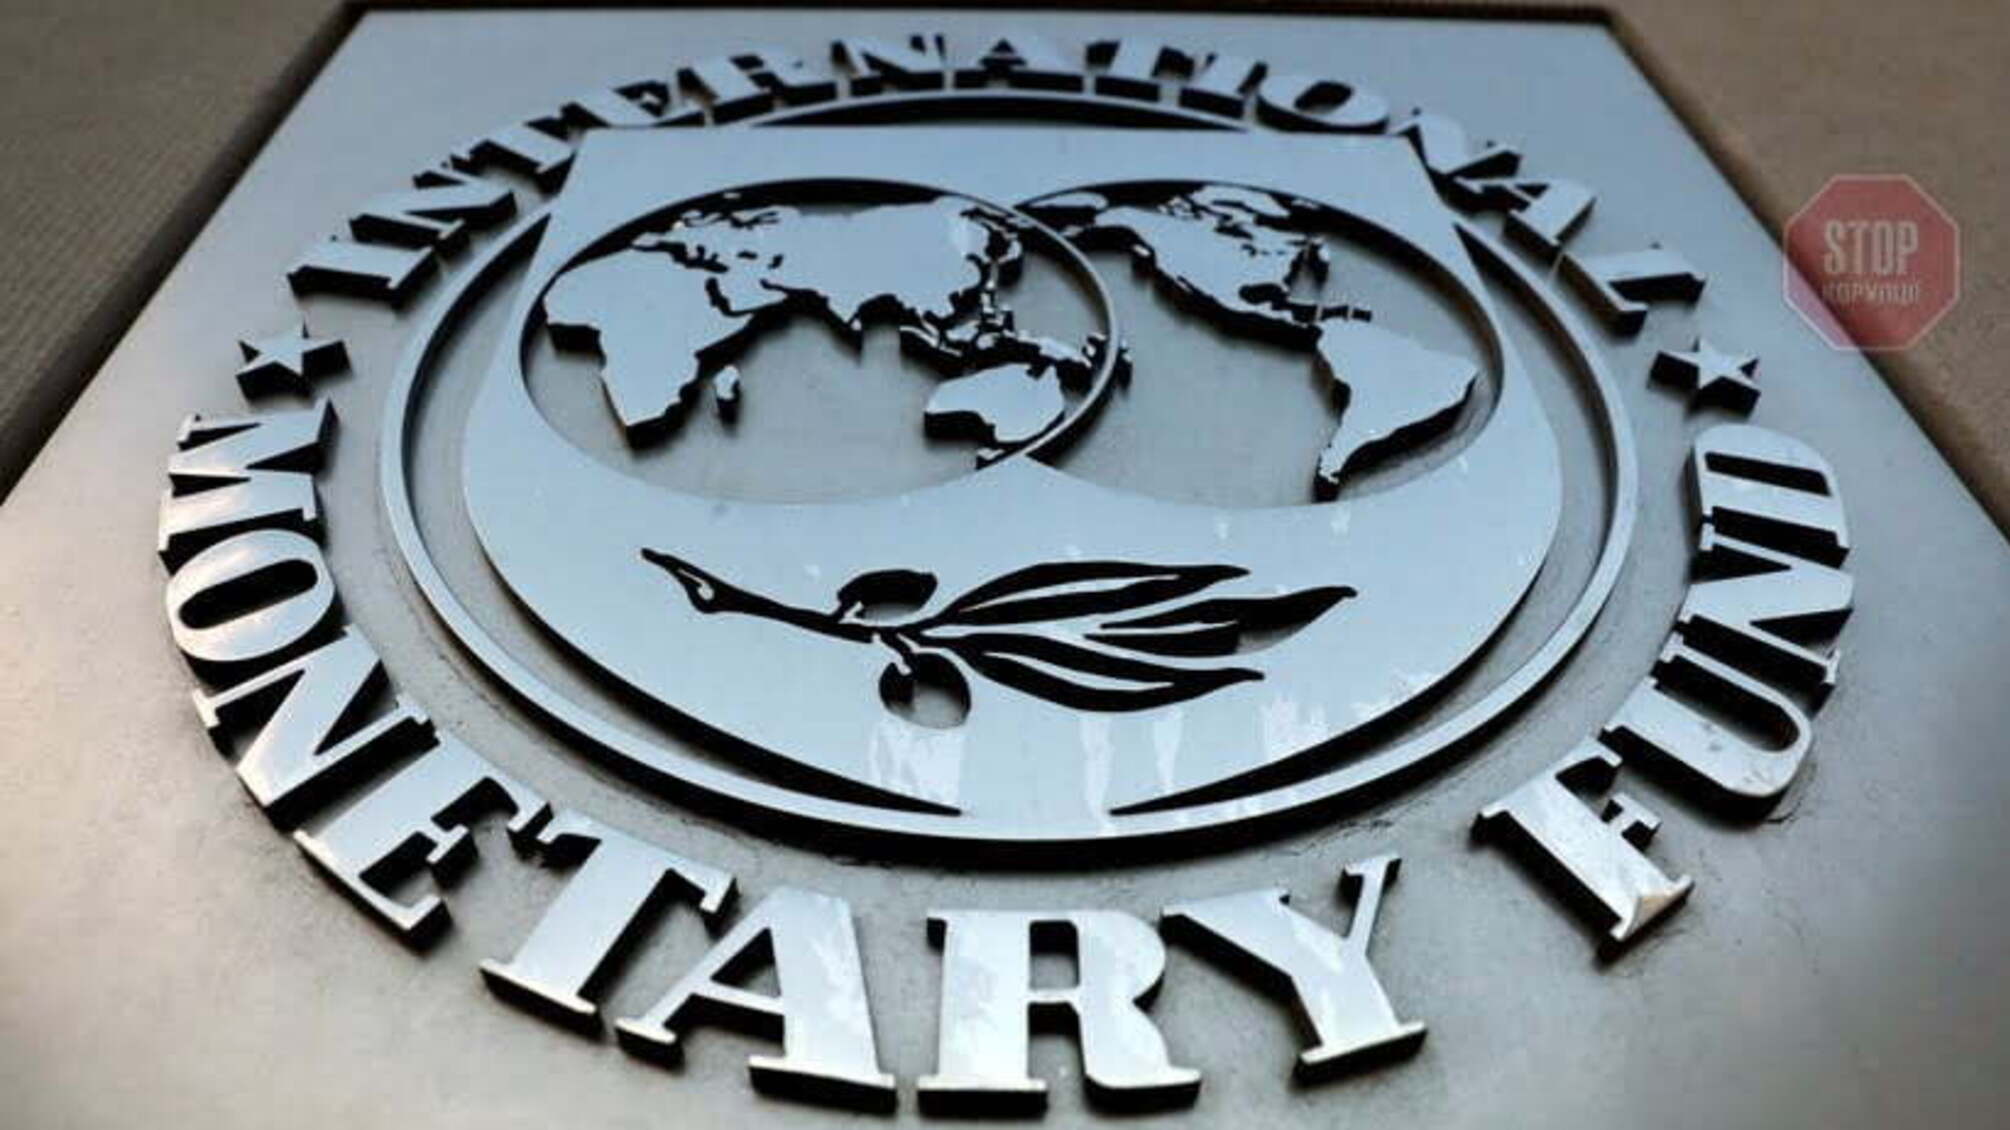 МВФ вернется в Украину с миссией в сентябре